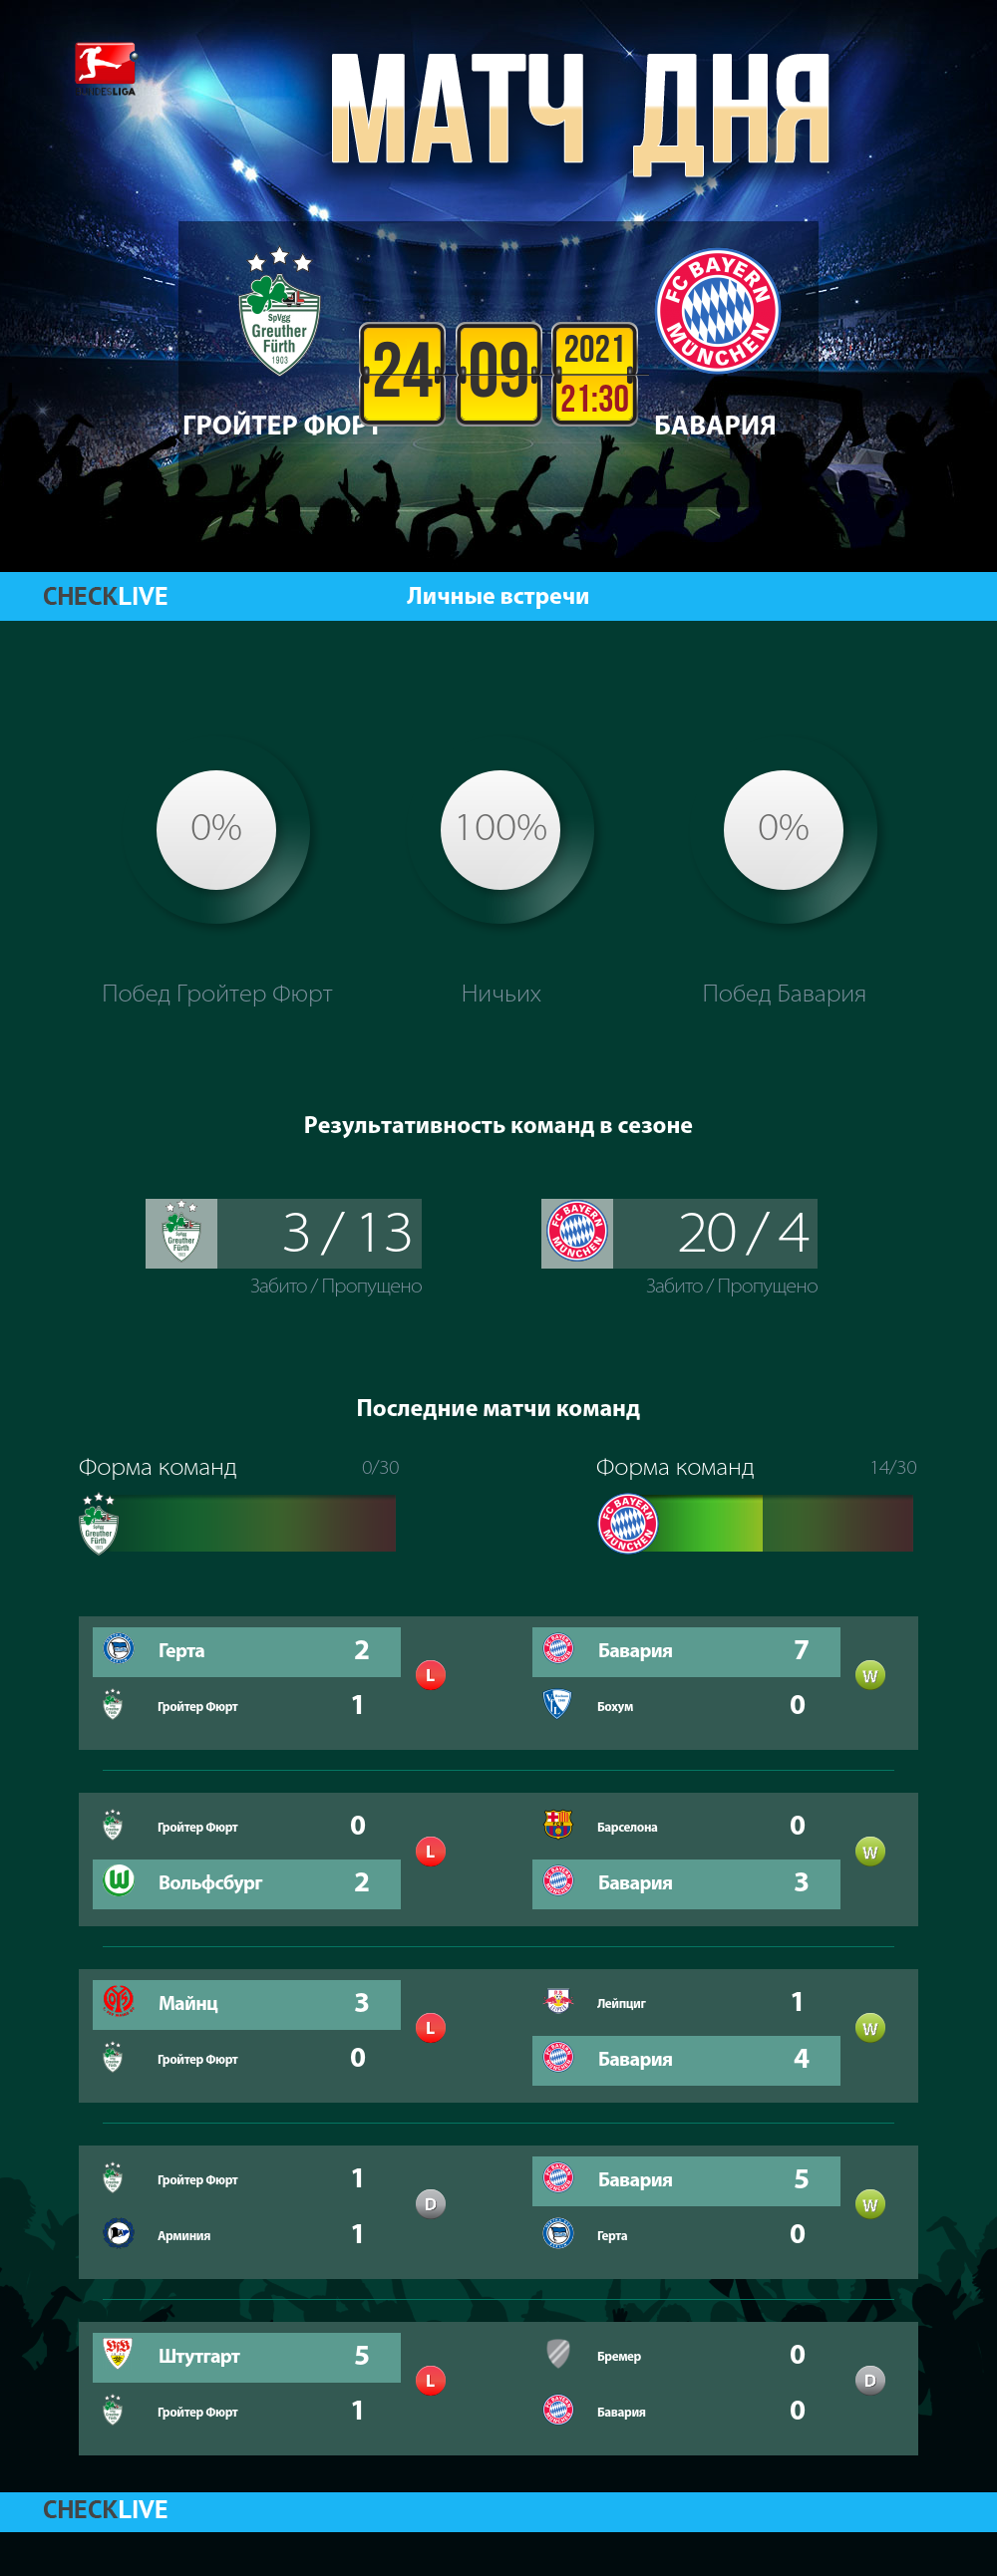 Инфографика Гройтер Фюрт и Бавария матч дня 24.09.2021